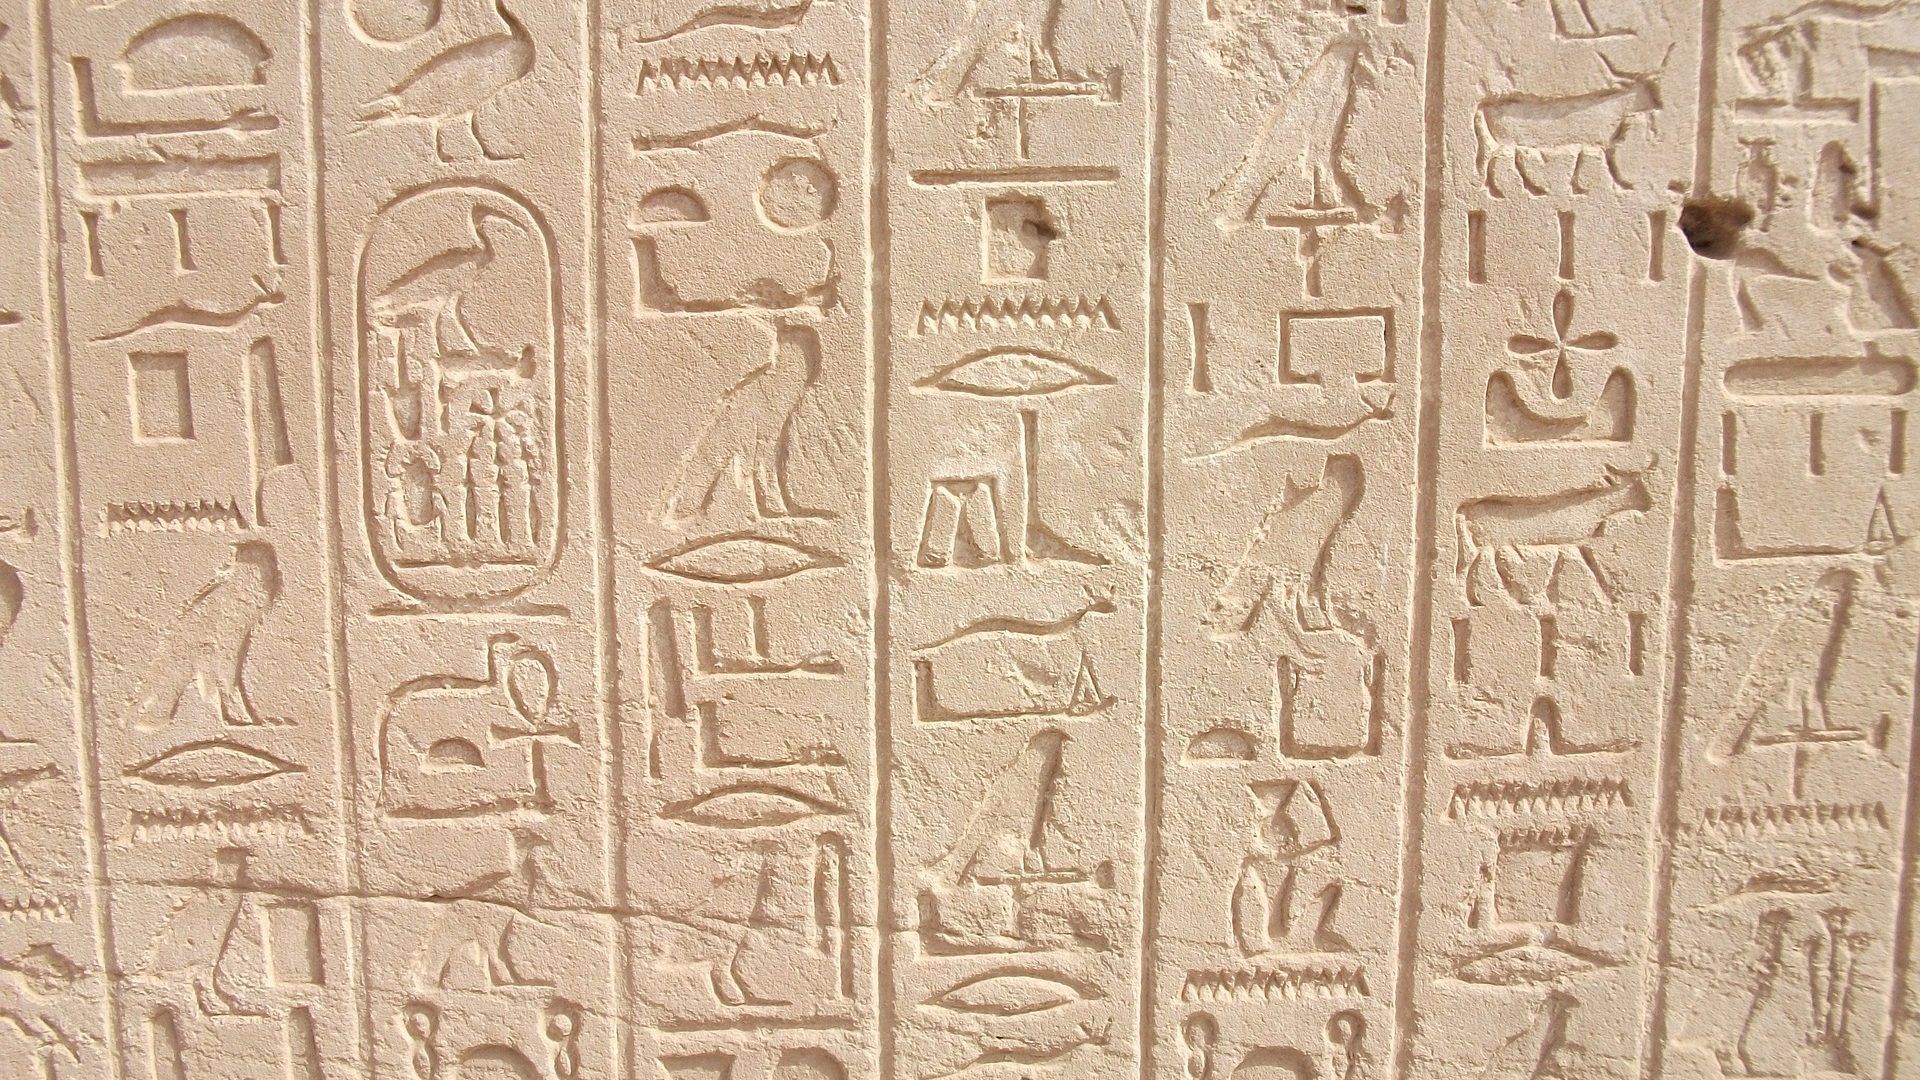 Hatalmas sírra bukkantak az egyiptomi Luxorban